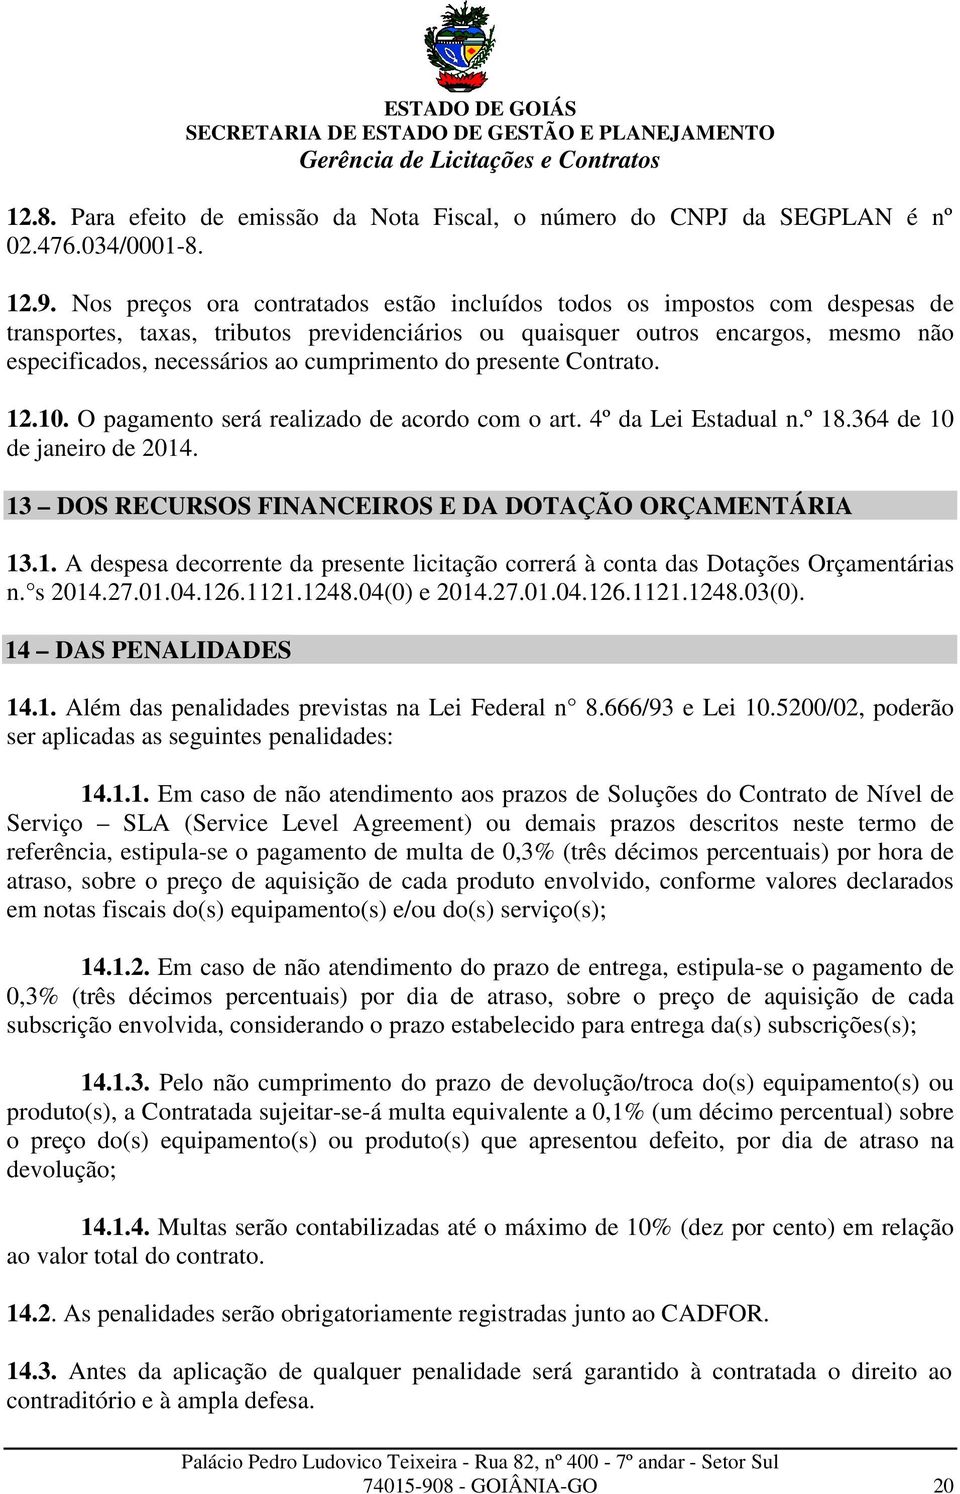 cumprimento do presente Contrato. 12.10. O pagamento será realizado de acordo com o art. 4º da Lei Estadual n.º 18.364 de 10 de janeiro de 2014.